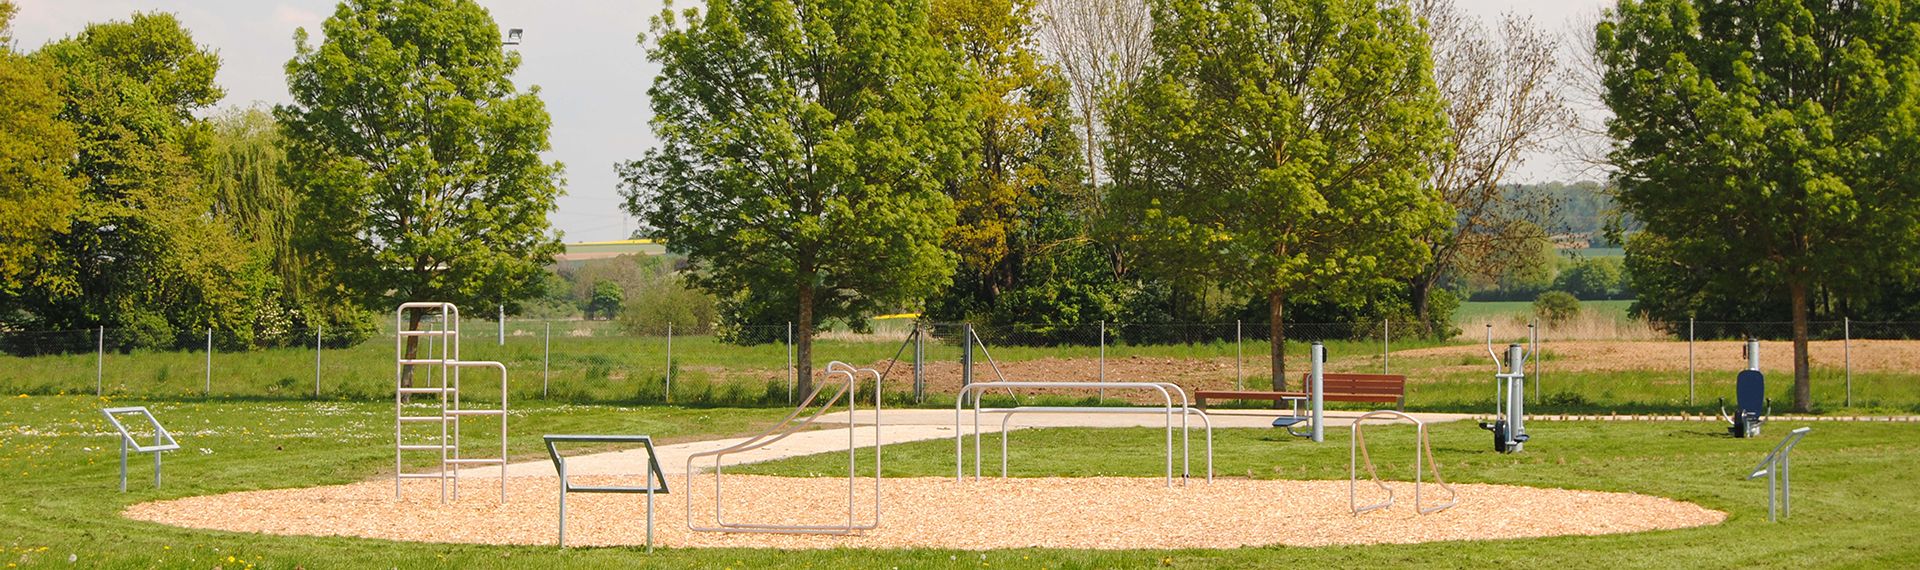 Neuer Sportgeräte-Park in Okarben